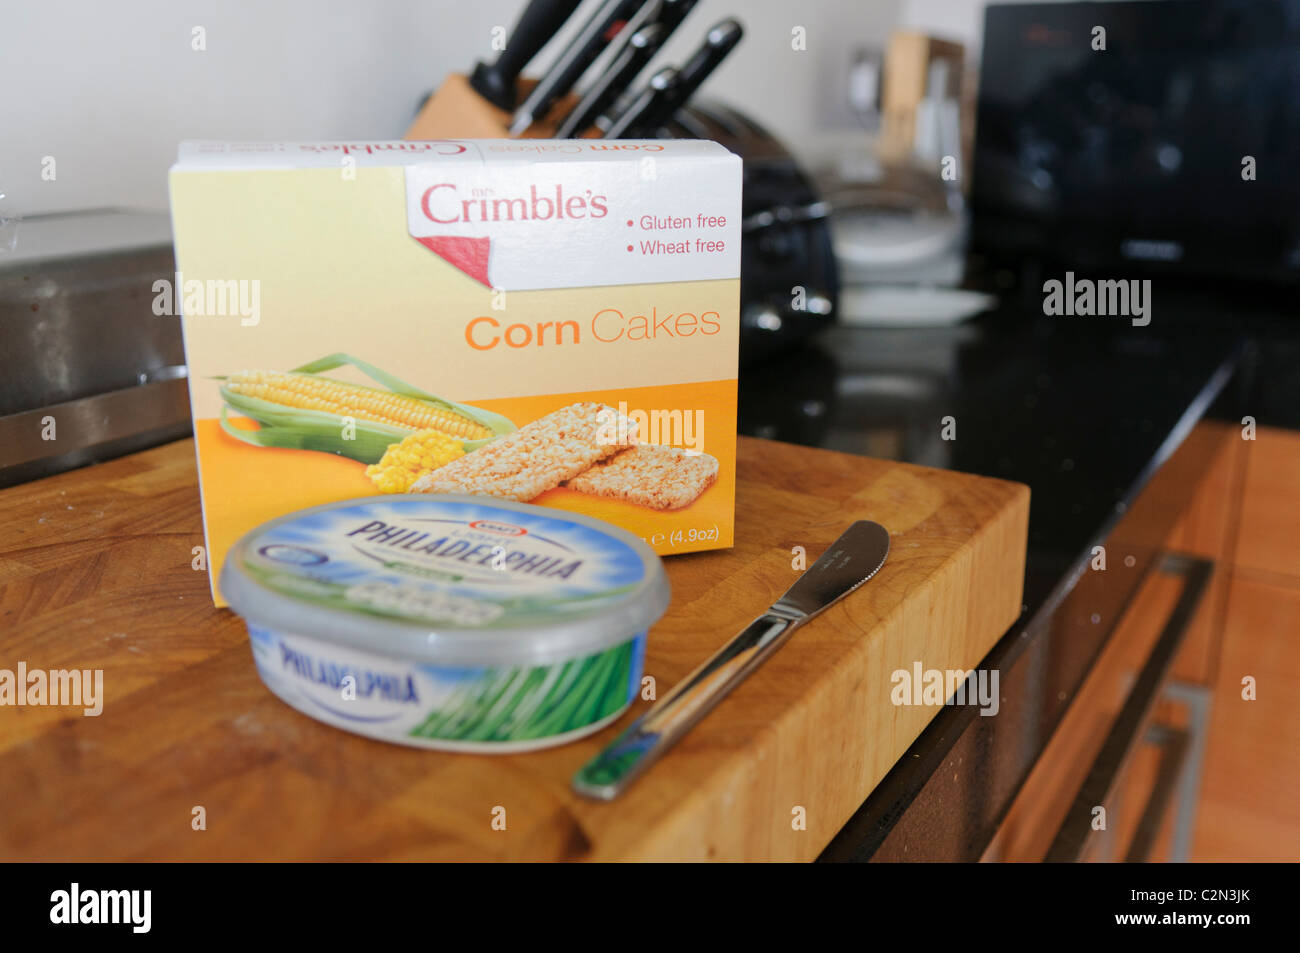 La Crimble sin gluten y trigo tortas de maíz y una bañera de queso crema Philadelphia en un breadboard en una cocina Foto de stock